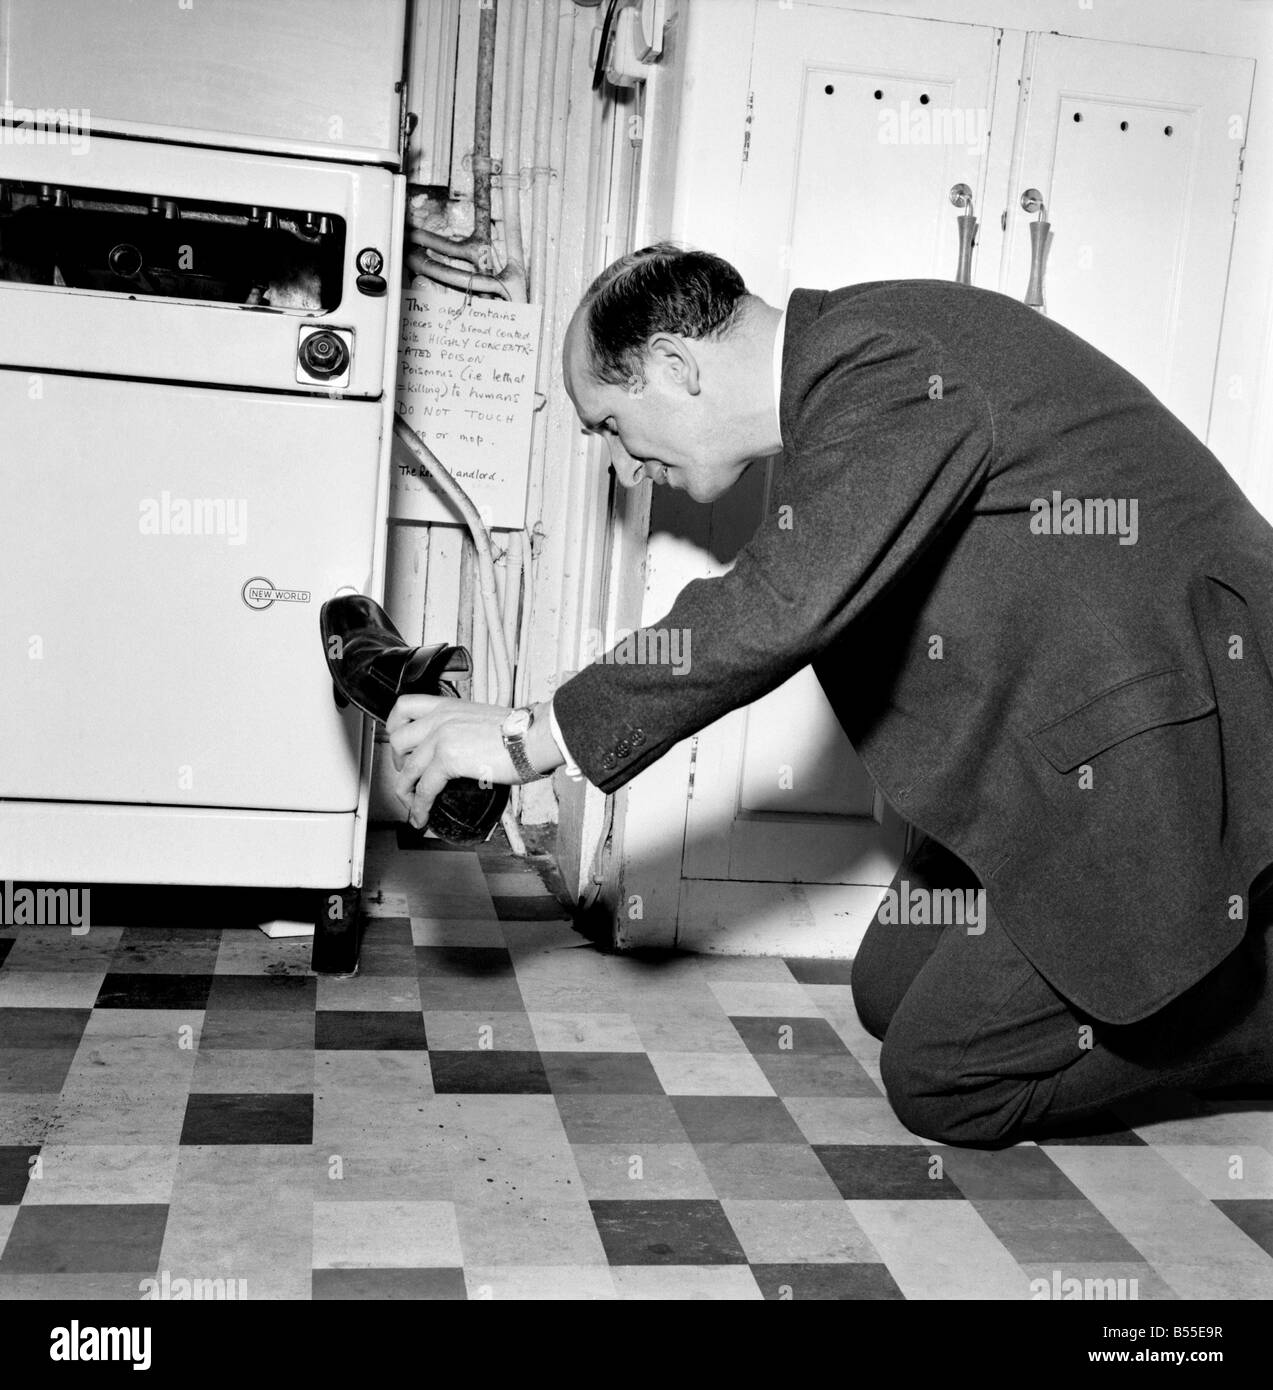 L'humour : Le Rev Brian Bason chaussure dans la main se prépare à faire un kill dans sa bataille avec la souris. Décembre 1969 Z12085 Banque D'Images